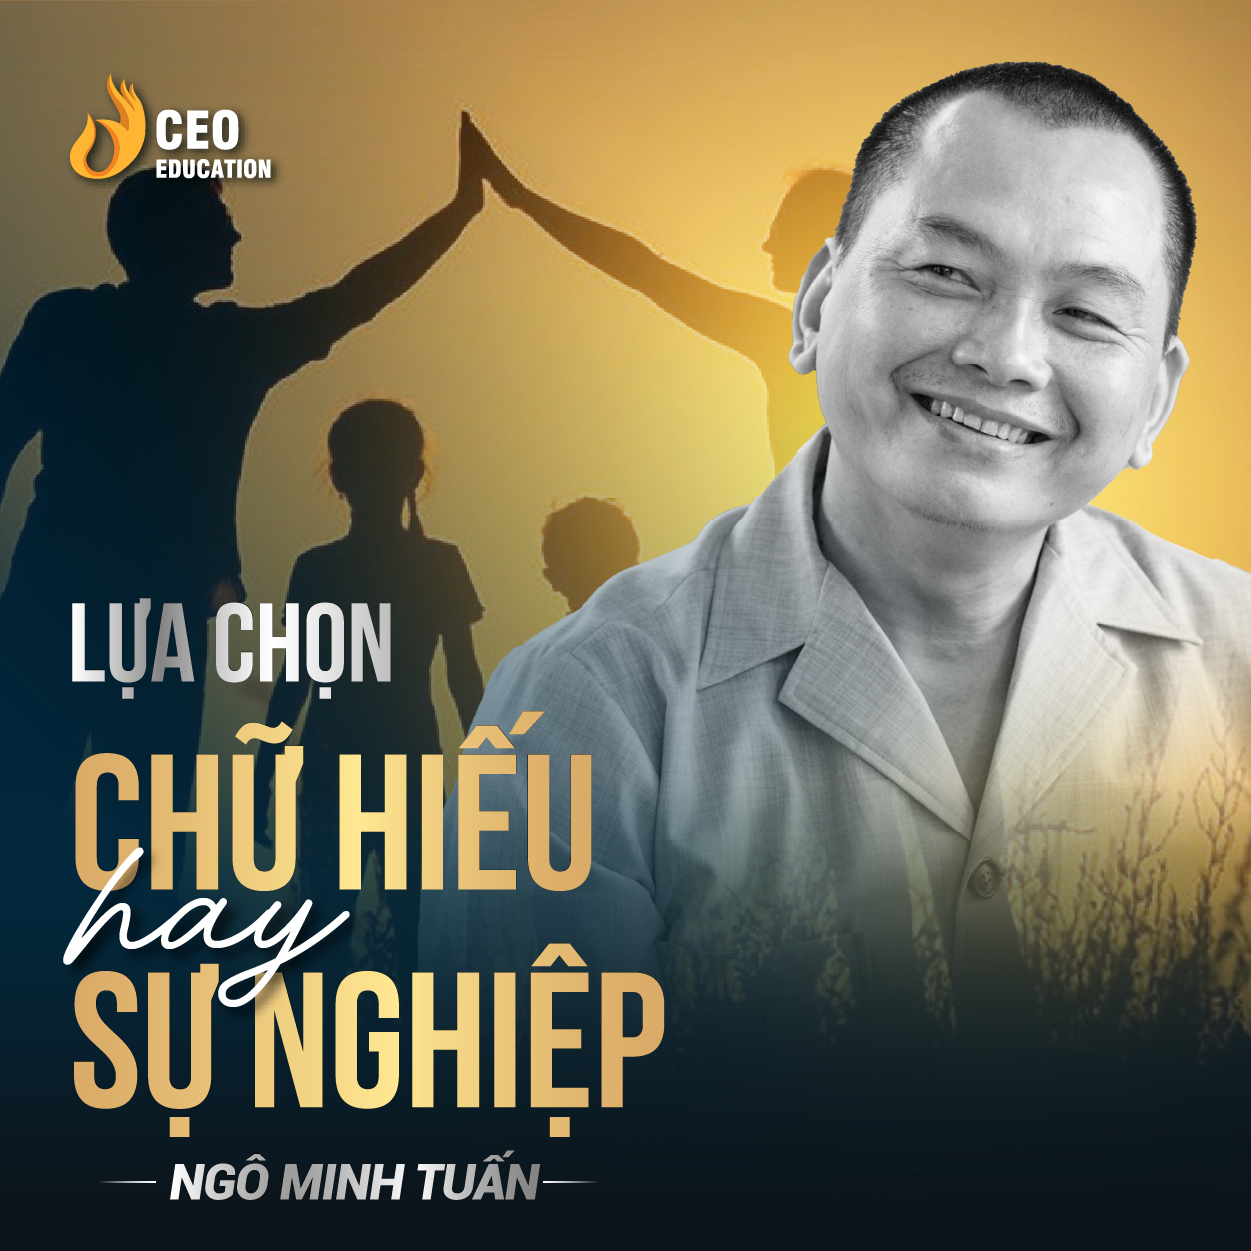 Lựa chọn chữ hiếu và sự nghiệp | Ngô Minh Tuấn | Học Viện CEO Việt Nam